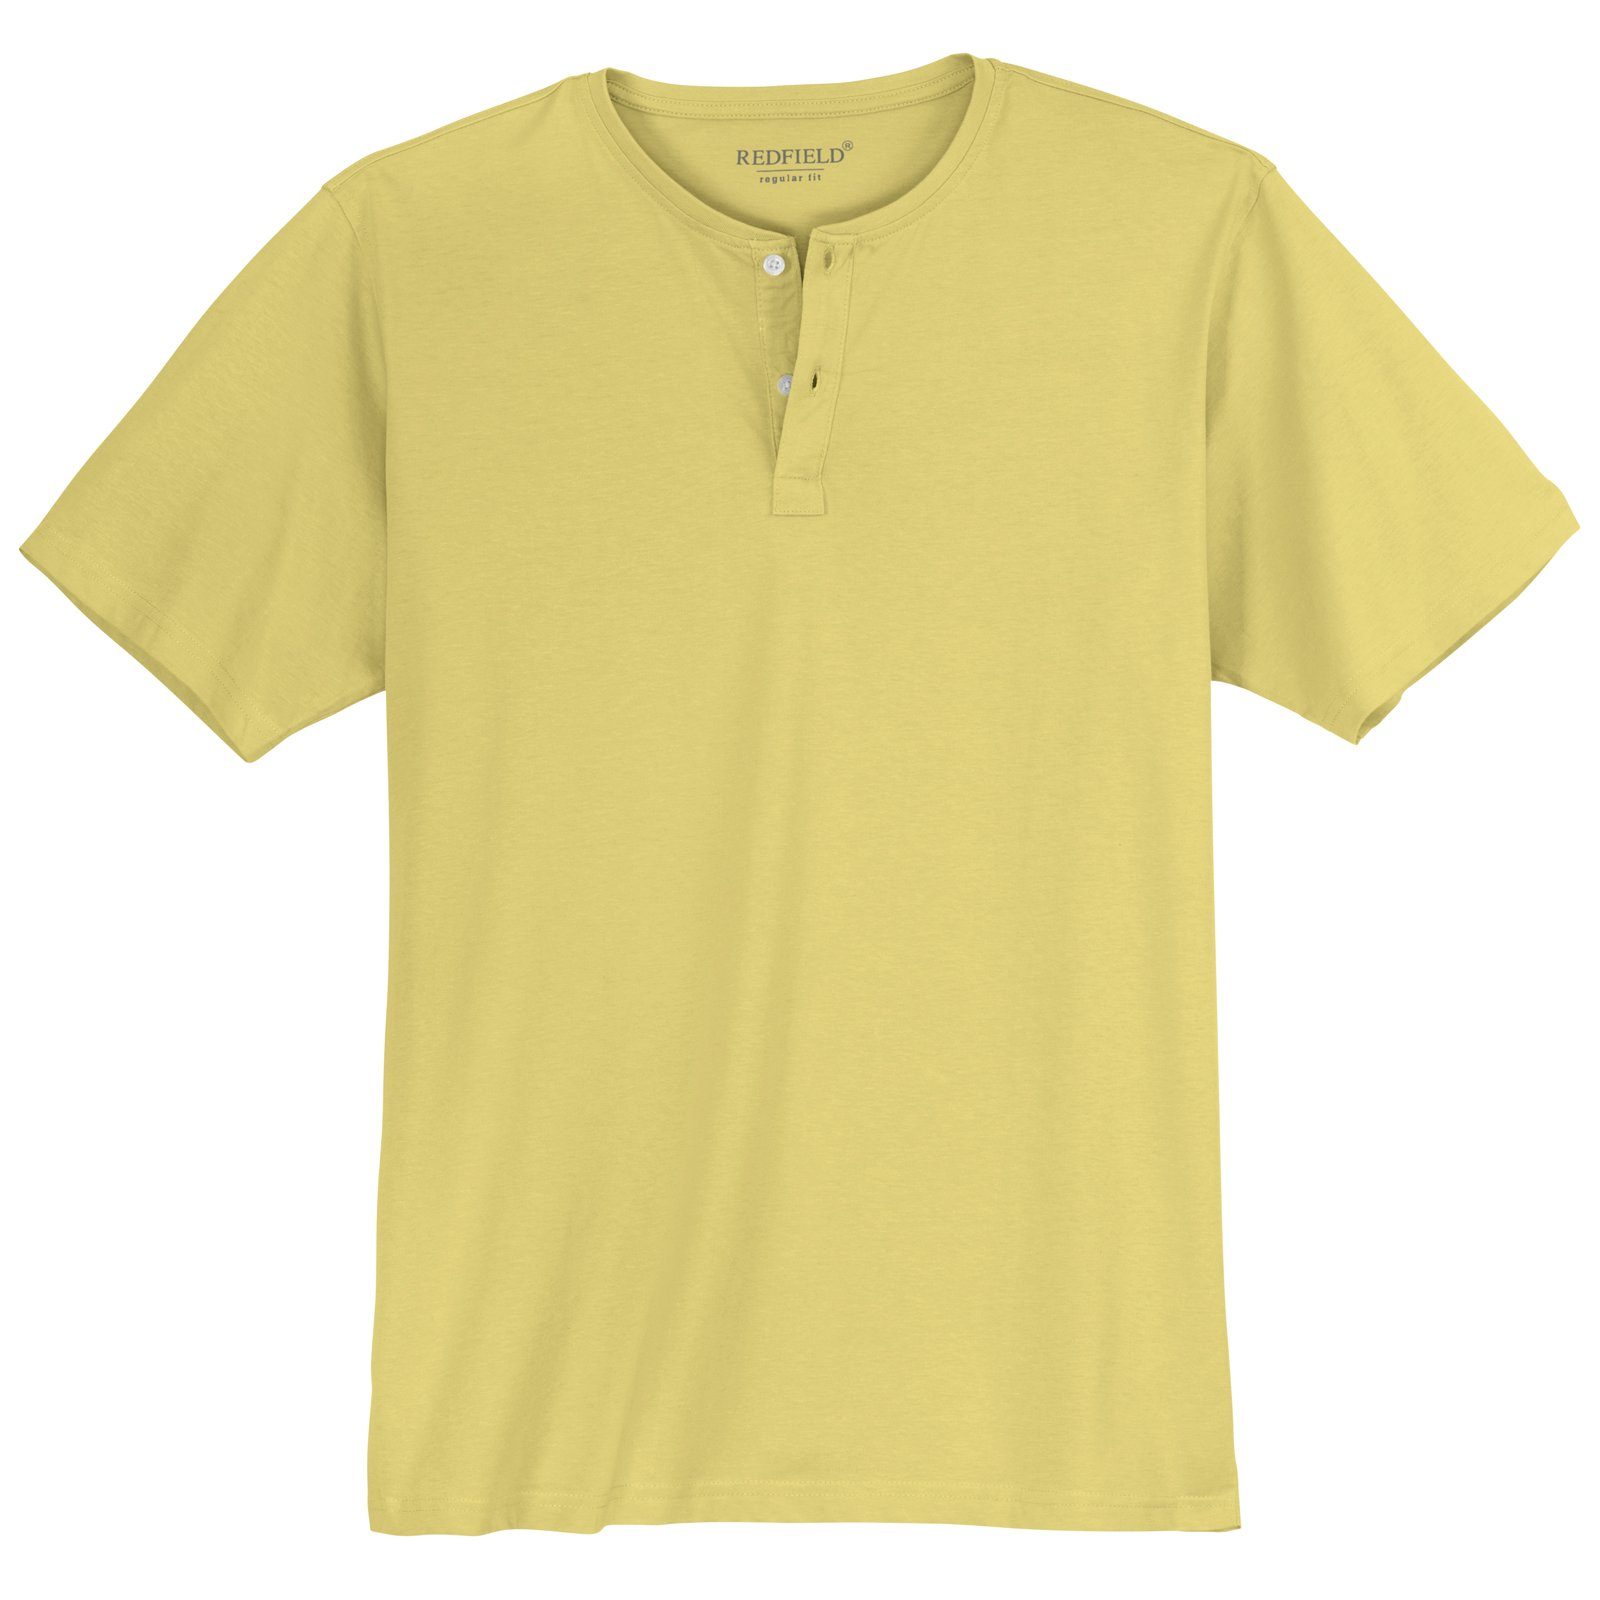 redfield Rundhalsshirt T-Shirt hellgelb Große Redfield Größen Knopfleiste Herren